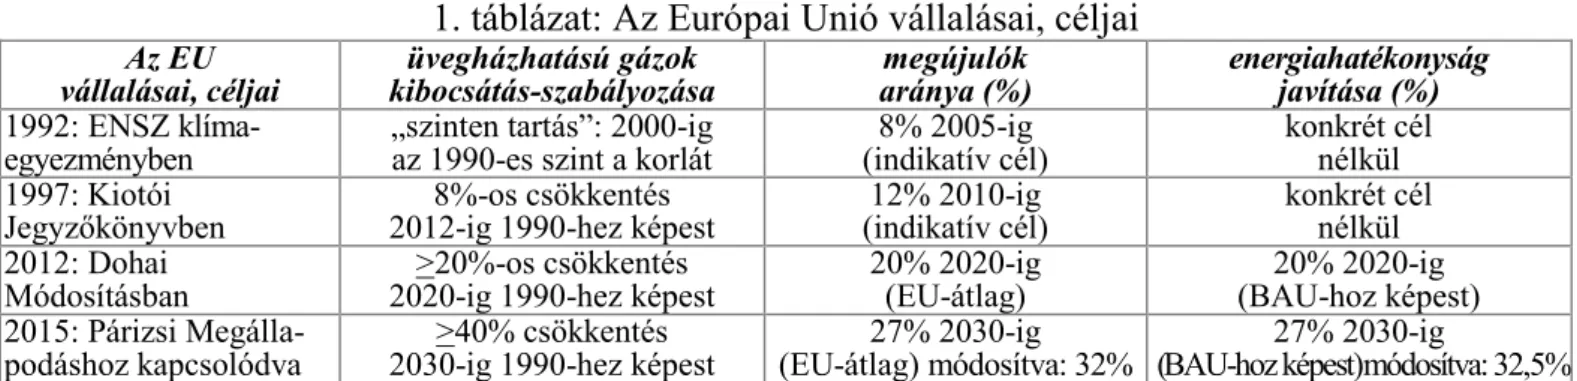 1. táblázat: Az Európai Unió vállalásai, céljai 